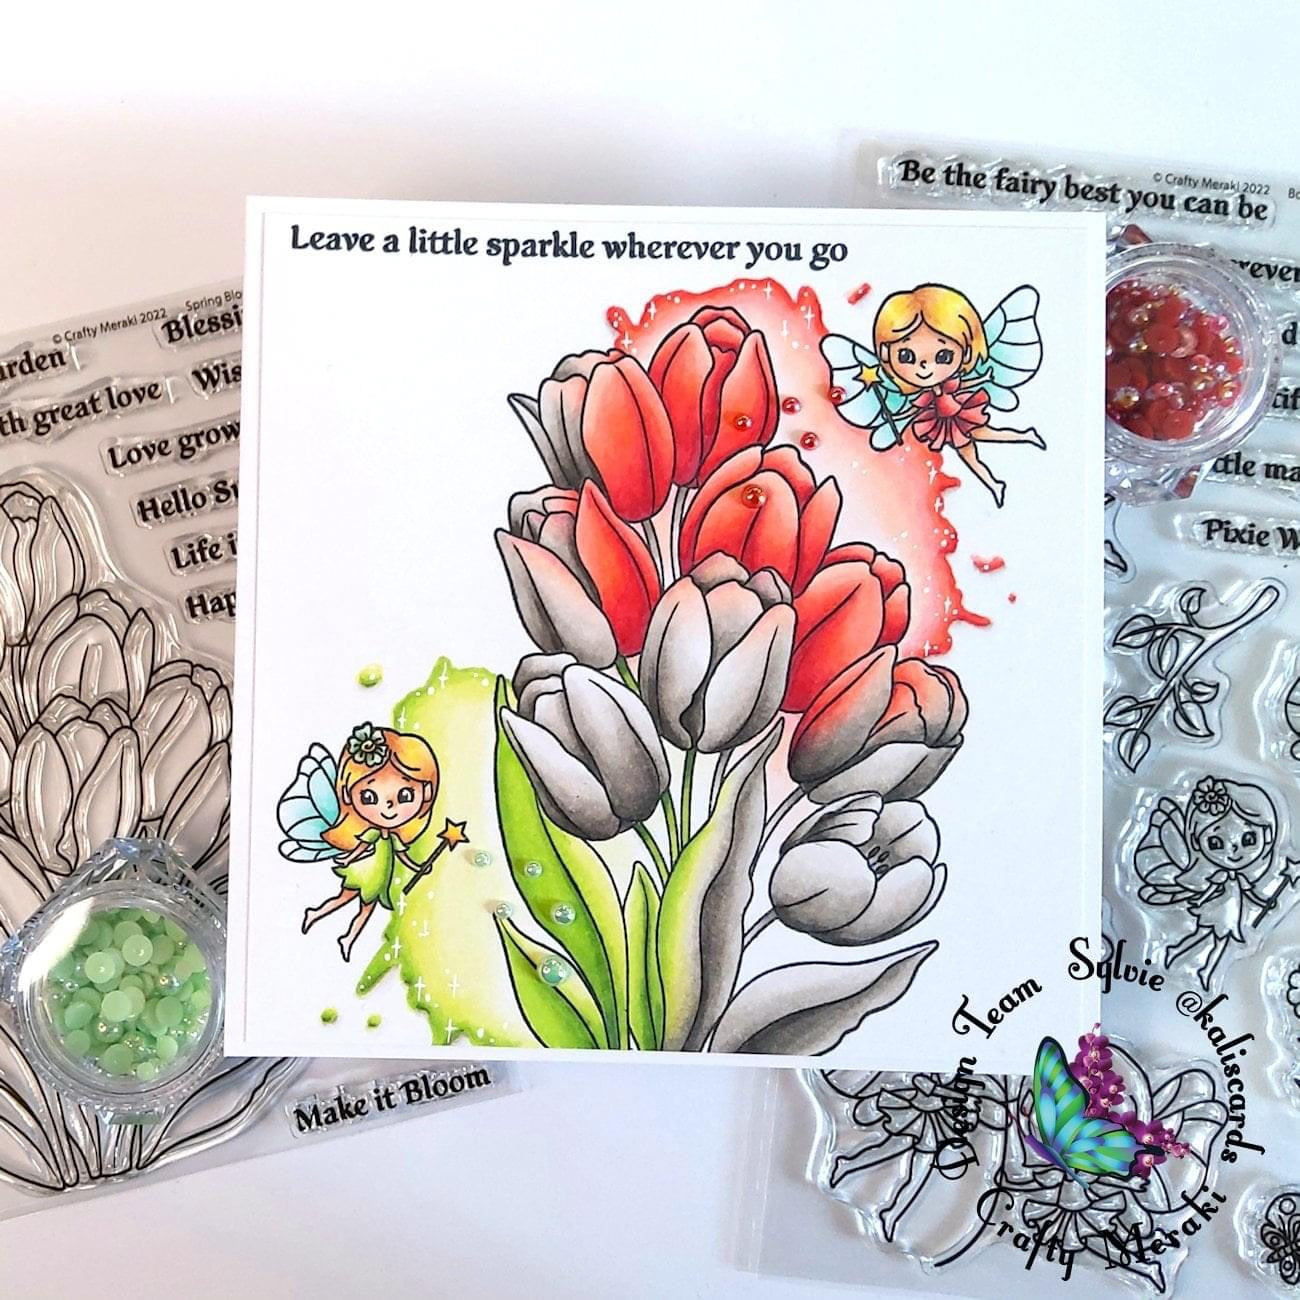 Crafty Meraki Spring Blooms Stamp set - Crafty Meraki